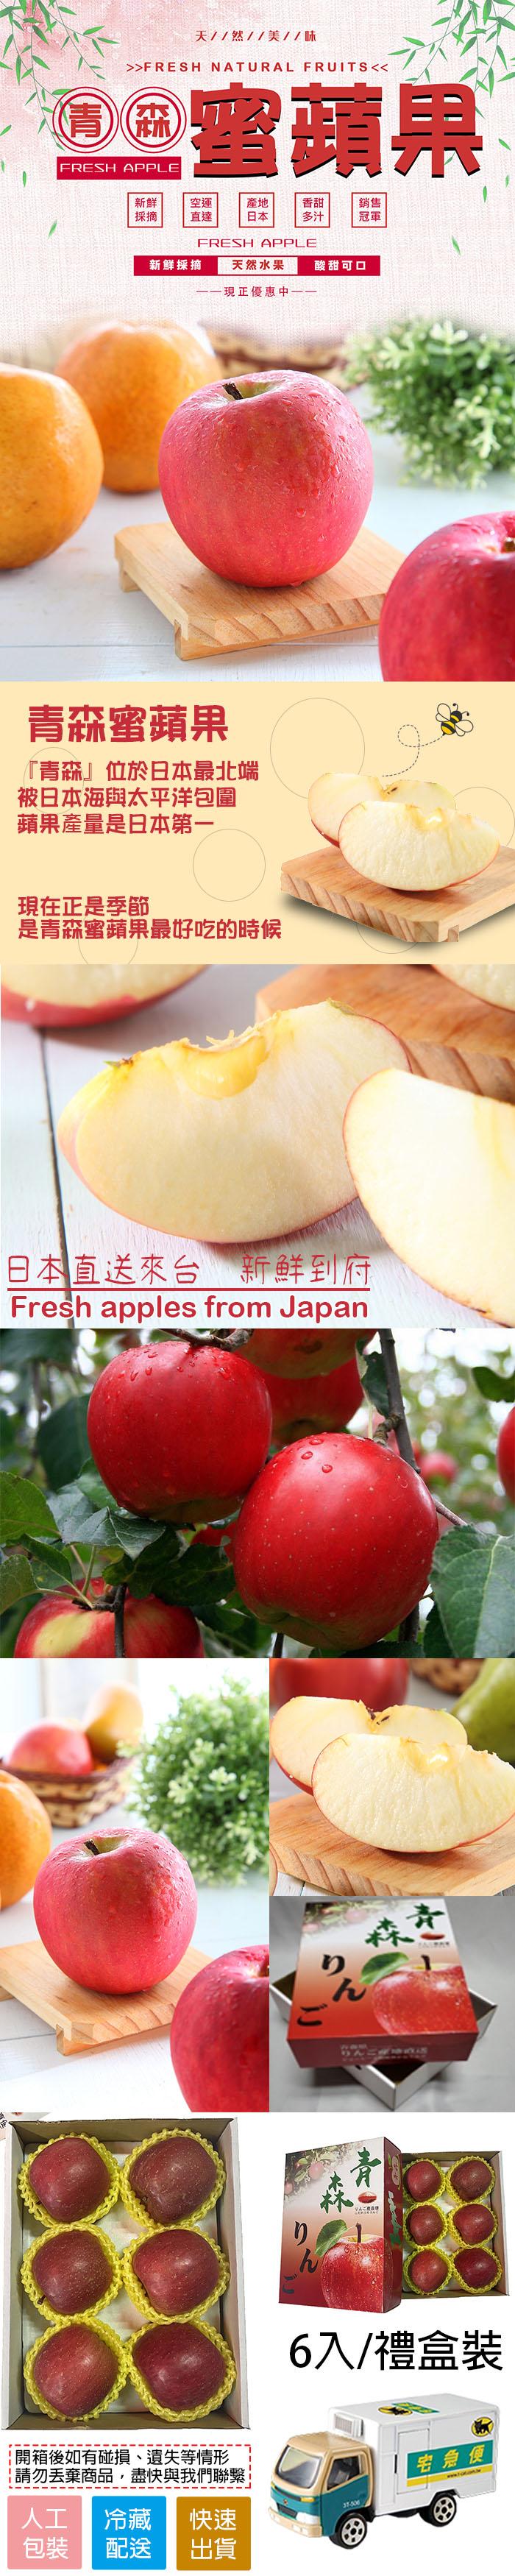 O 雪蘋果，天//然//美//味，青森蜜蘋果，青森位於日本最北端，被日本海與太平洋包圍，蘋果產量是日本第一，新鮮採摘 天然水果，——現正優惠中——，現在正是季節，是青森蜜蘋果最好吃的時候，開箱後如有碰損、遺失等情形，請勿丟棄商品,盡快與我們聯繫，冷藏